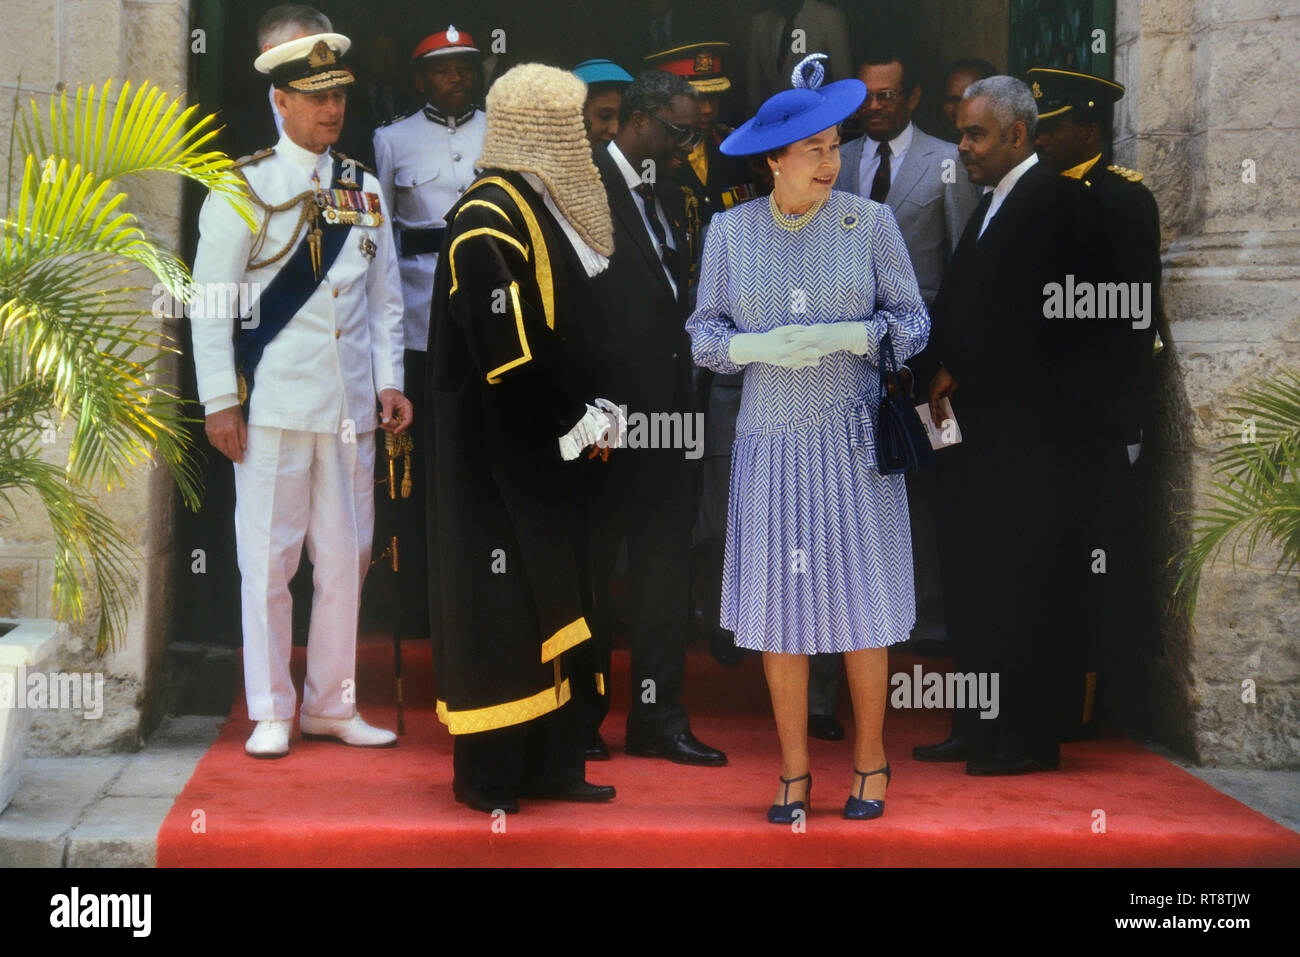 La Reine Elizabeth II et le prince Philip, accompagnés du président de la Chambre, Lawson Weekes, lors d'une visite royale à l'occasion du 350e anniversaire du Parlement de la Barbade, Bridgetown. 8-11 mars 1989 Banque D'Images